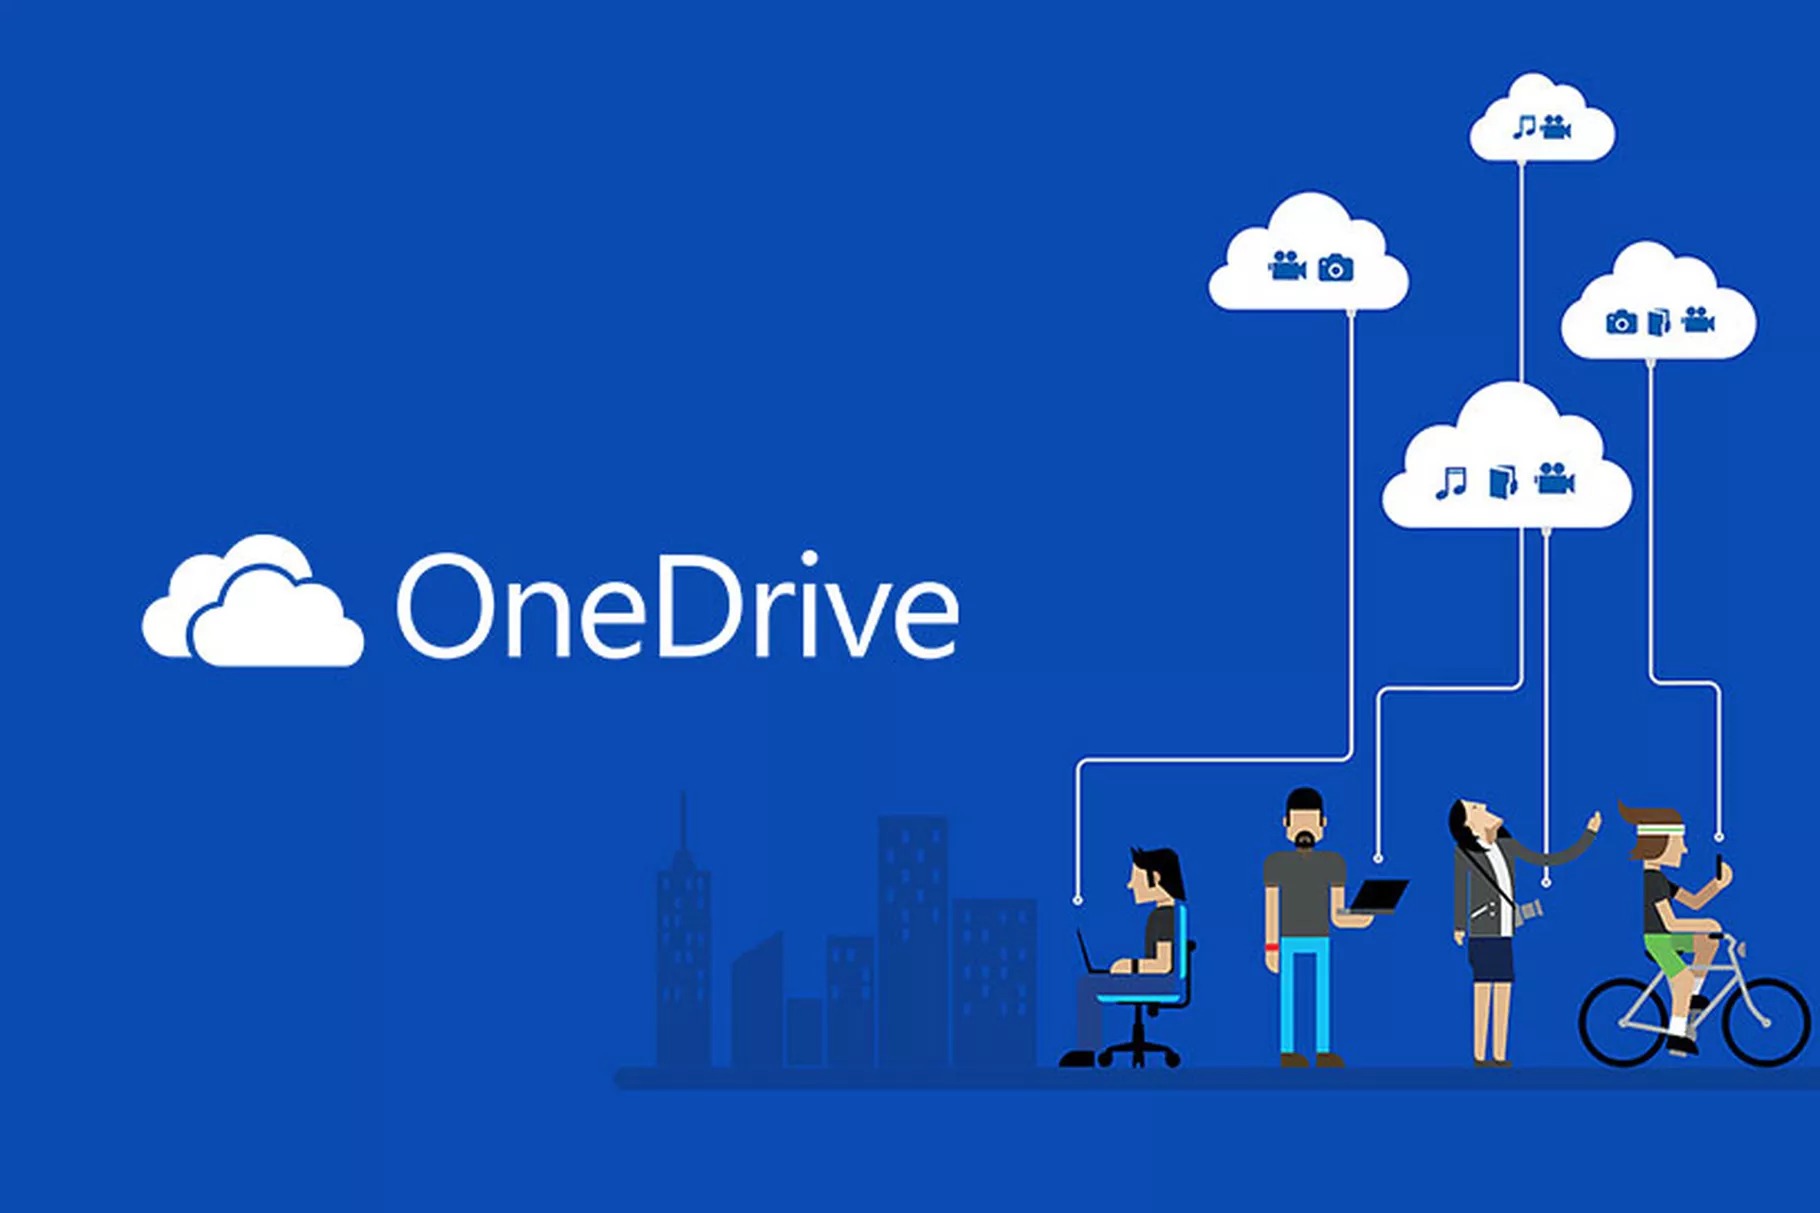 Microsoft OneDrive.5